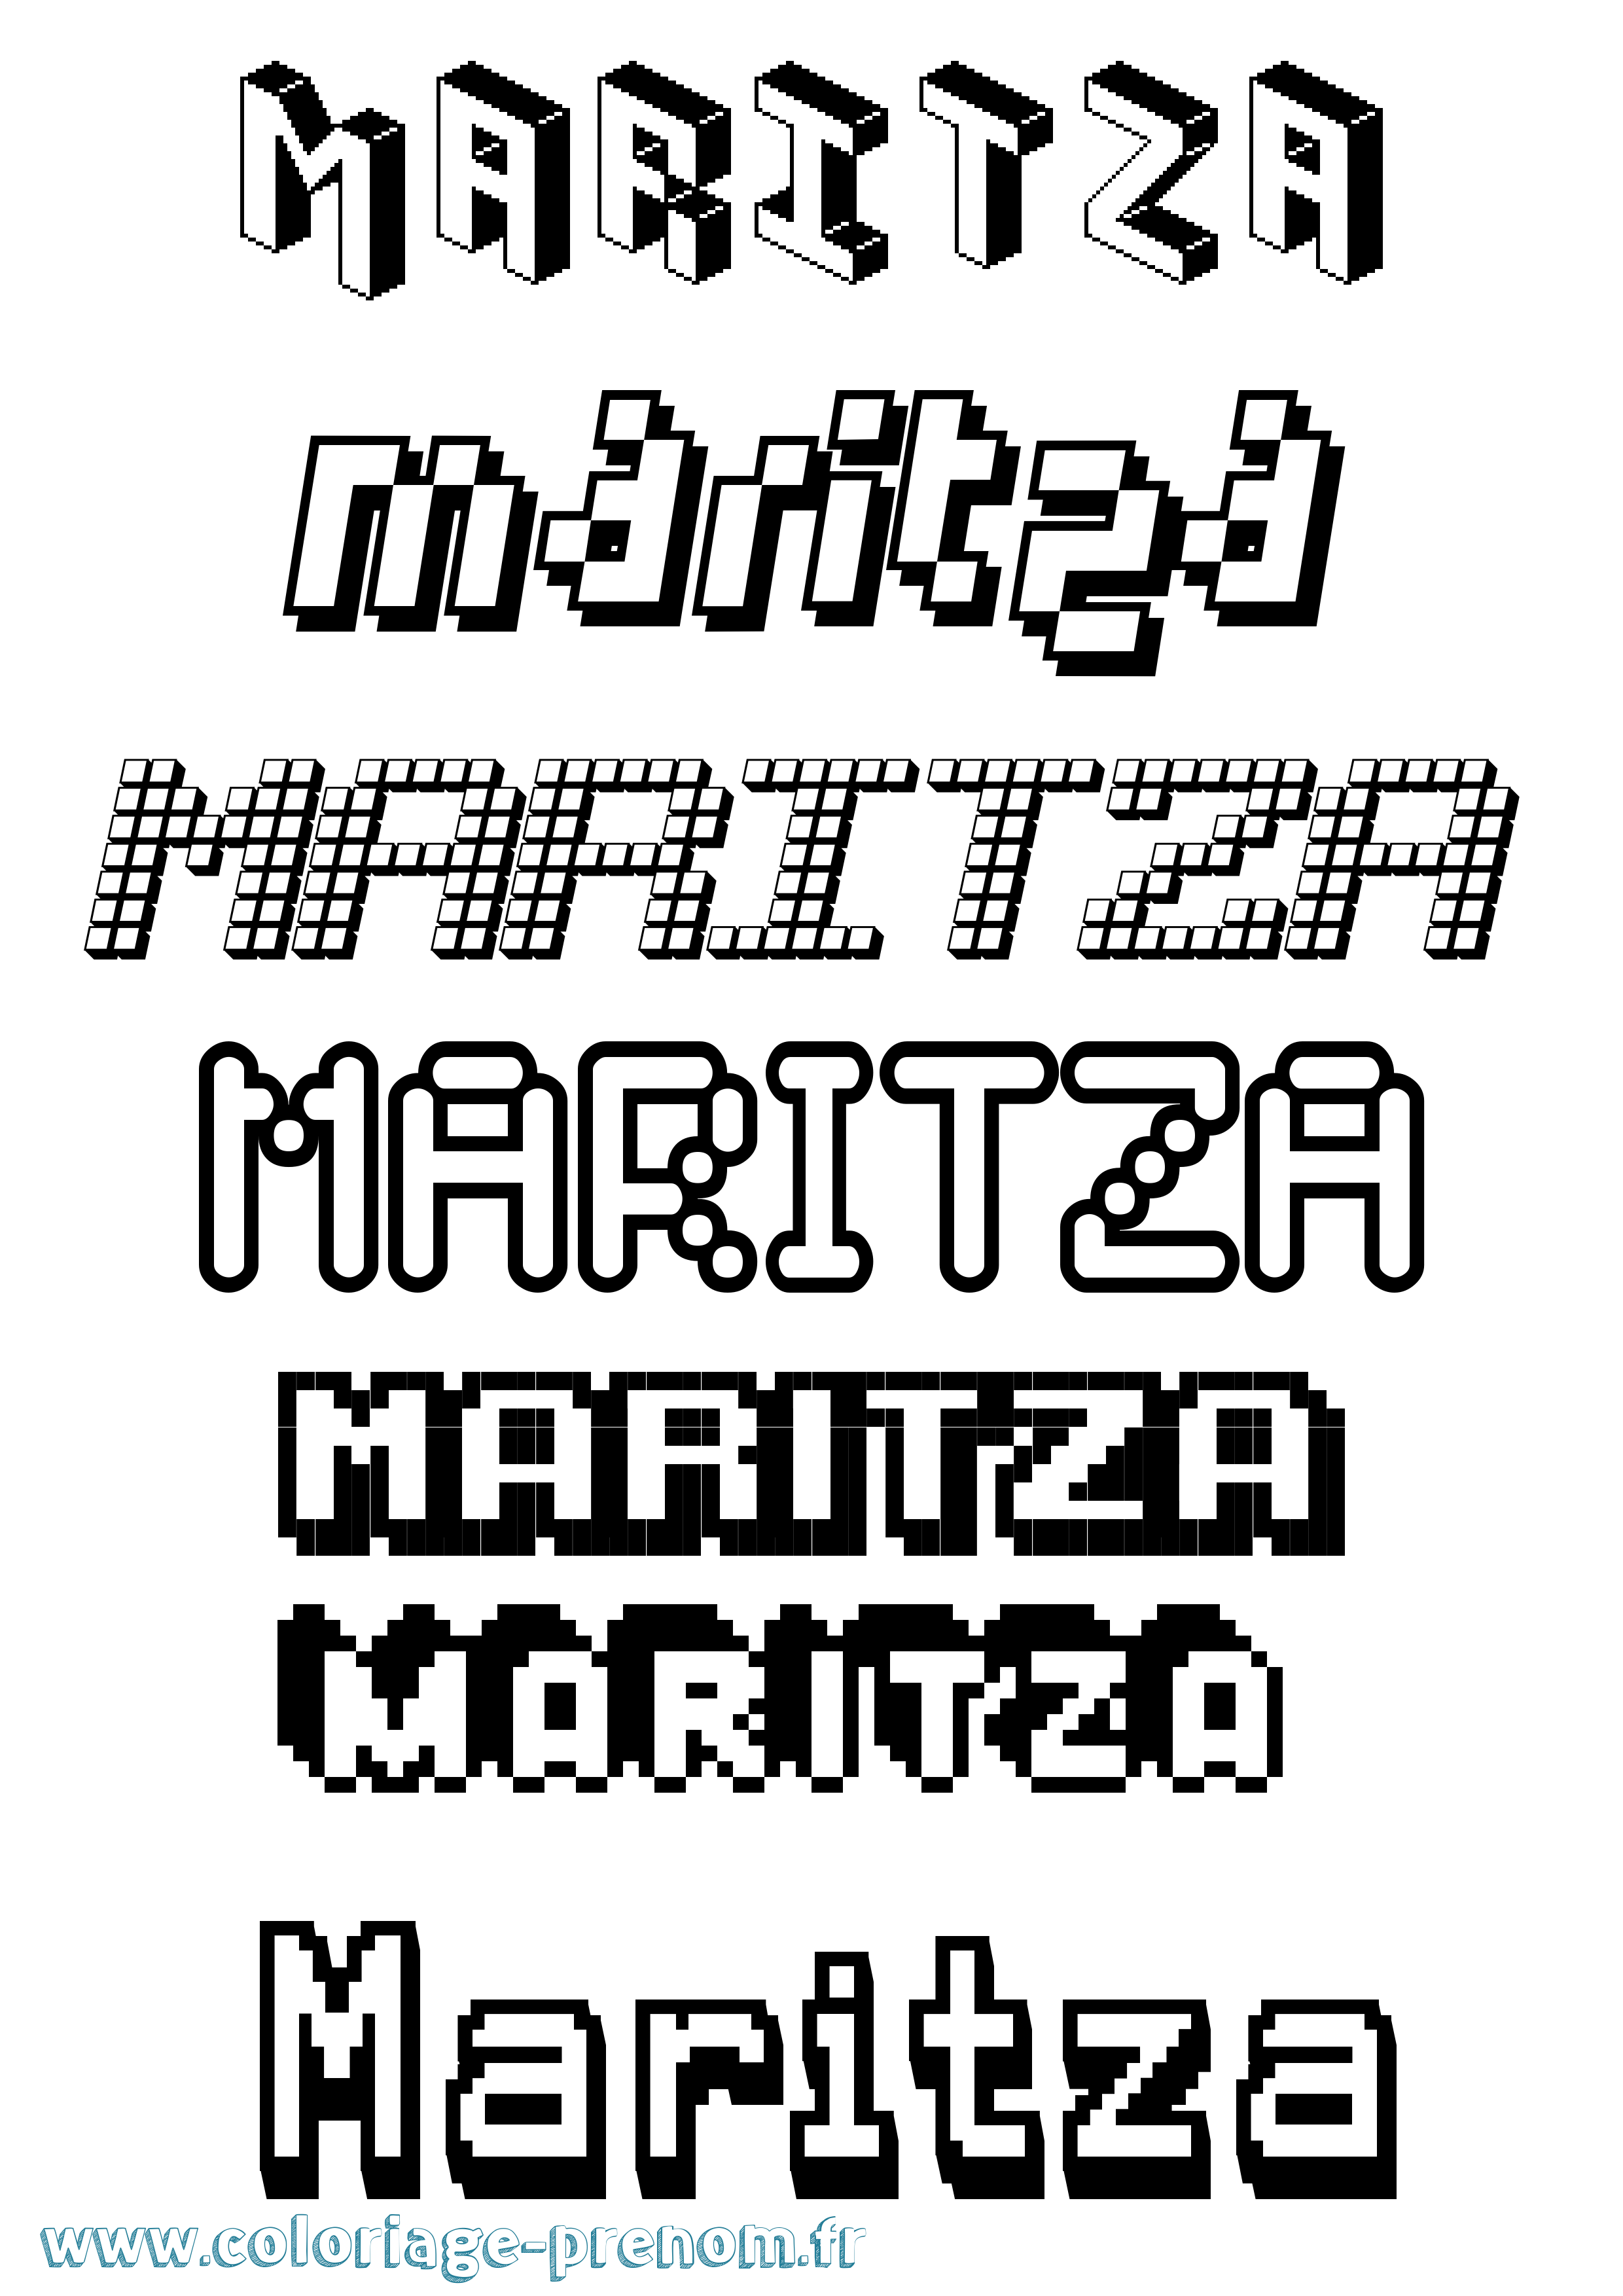 Coloriage prénom Maritza Pixel